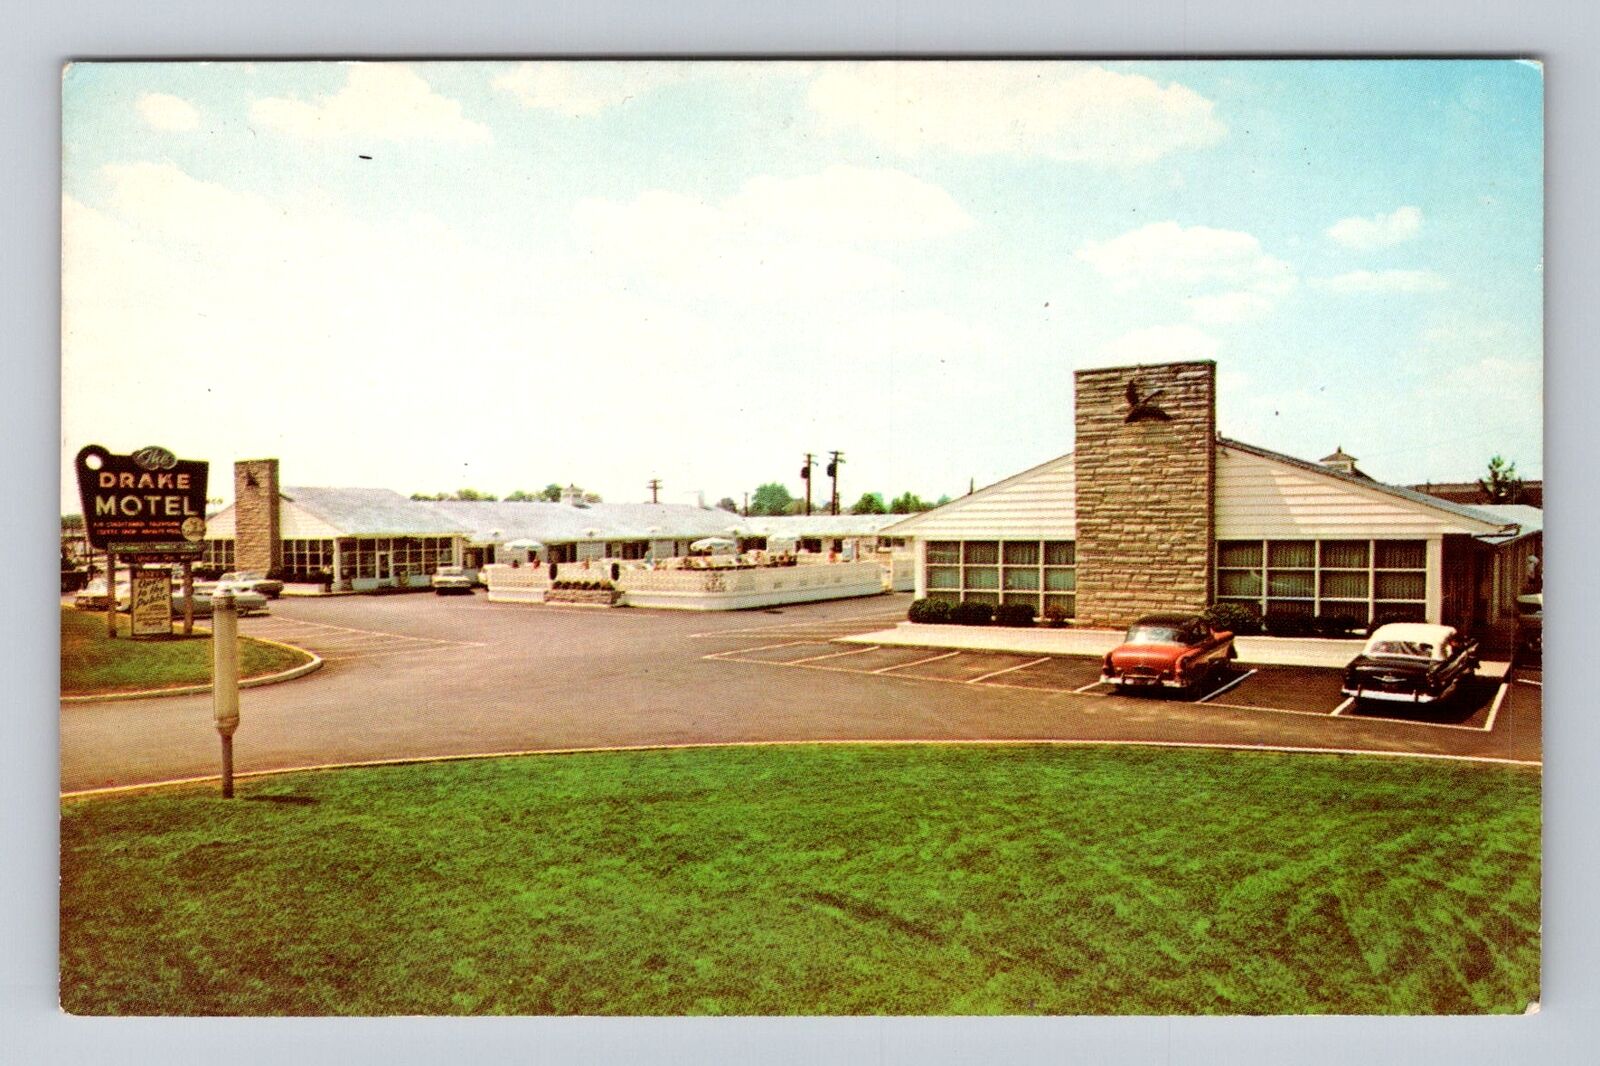 Cincinnati OH-Ohio, Drake Motel Executive Inn Advertising Vintage Postcard